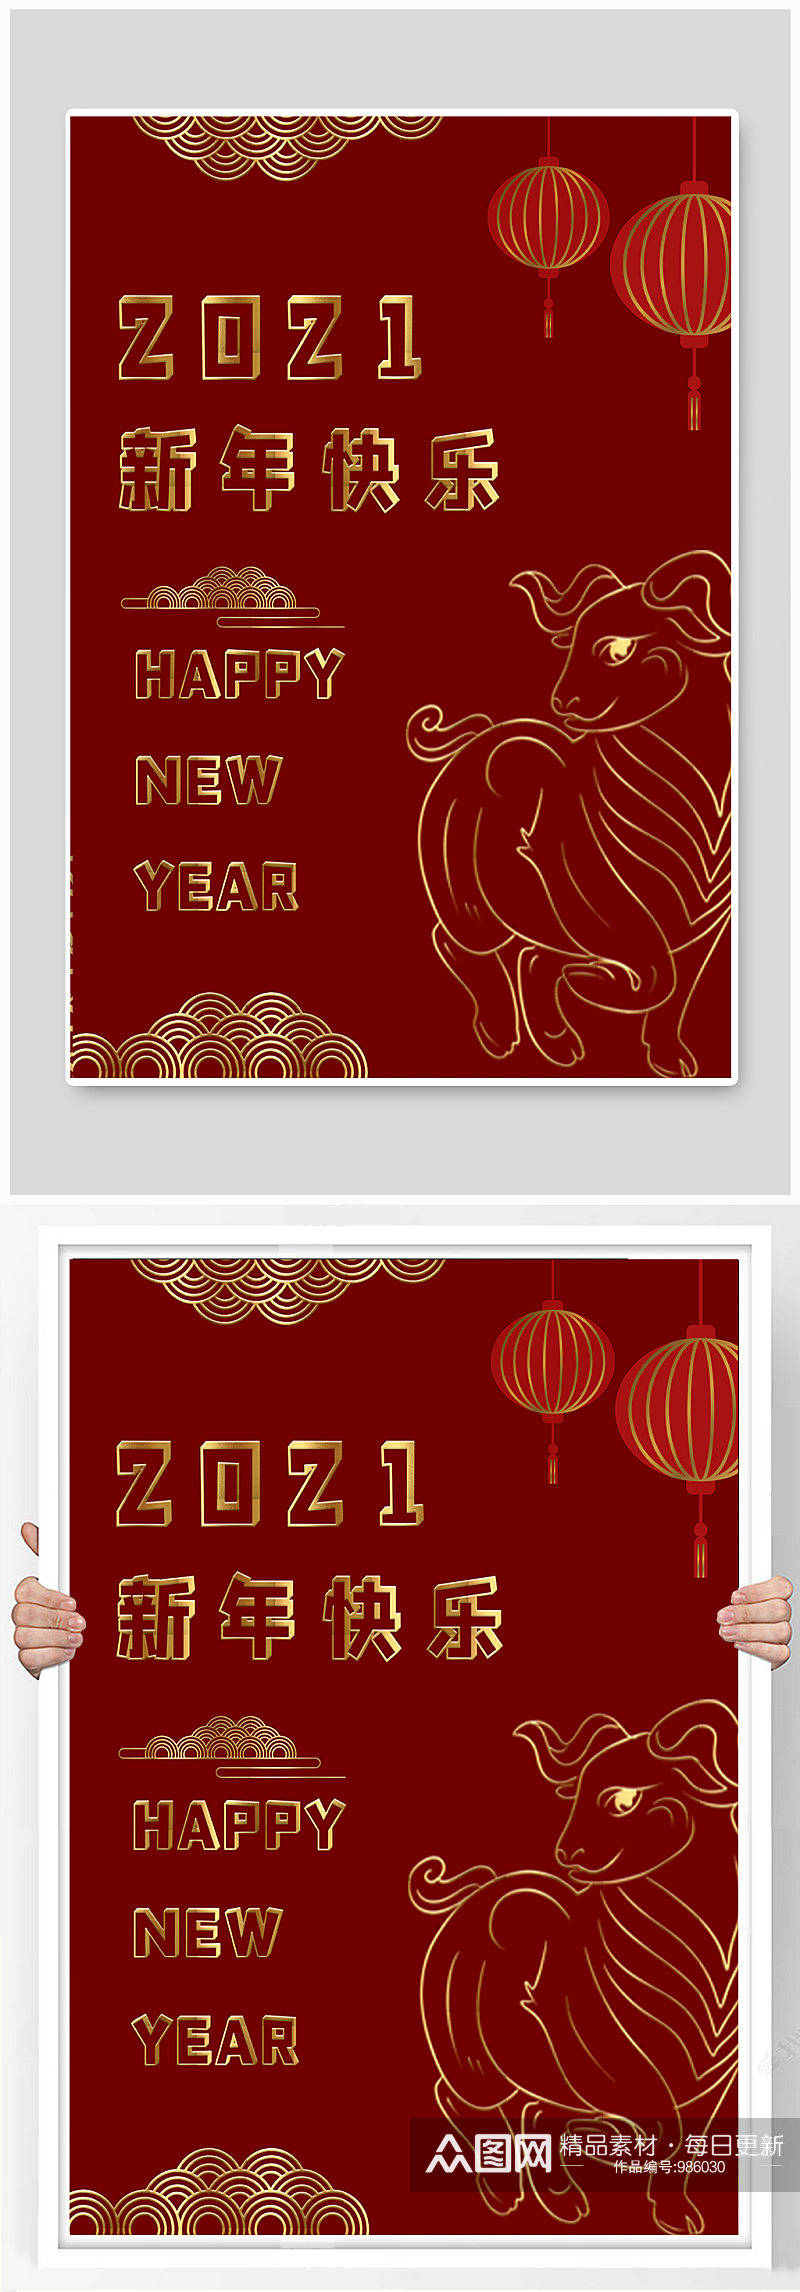 2021年新年快乐红色海报素材